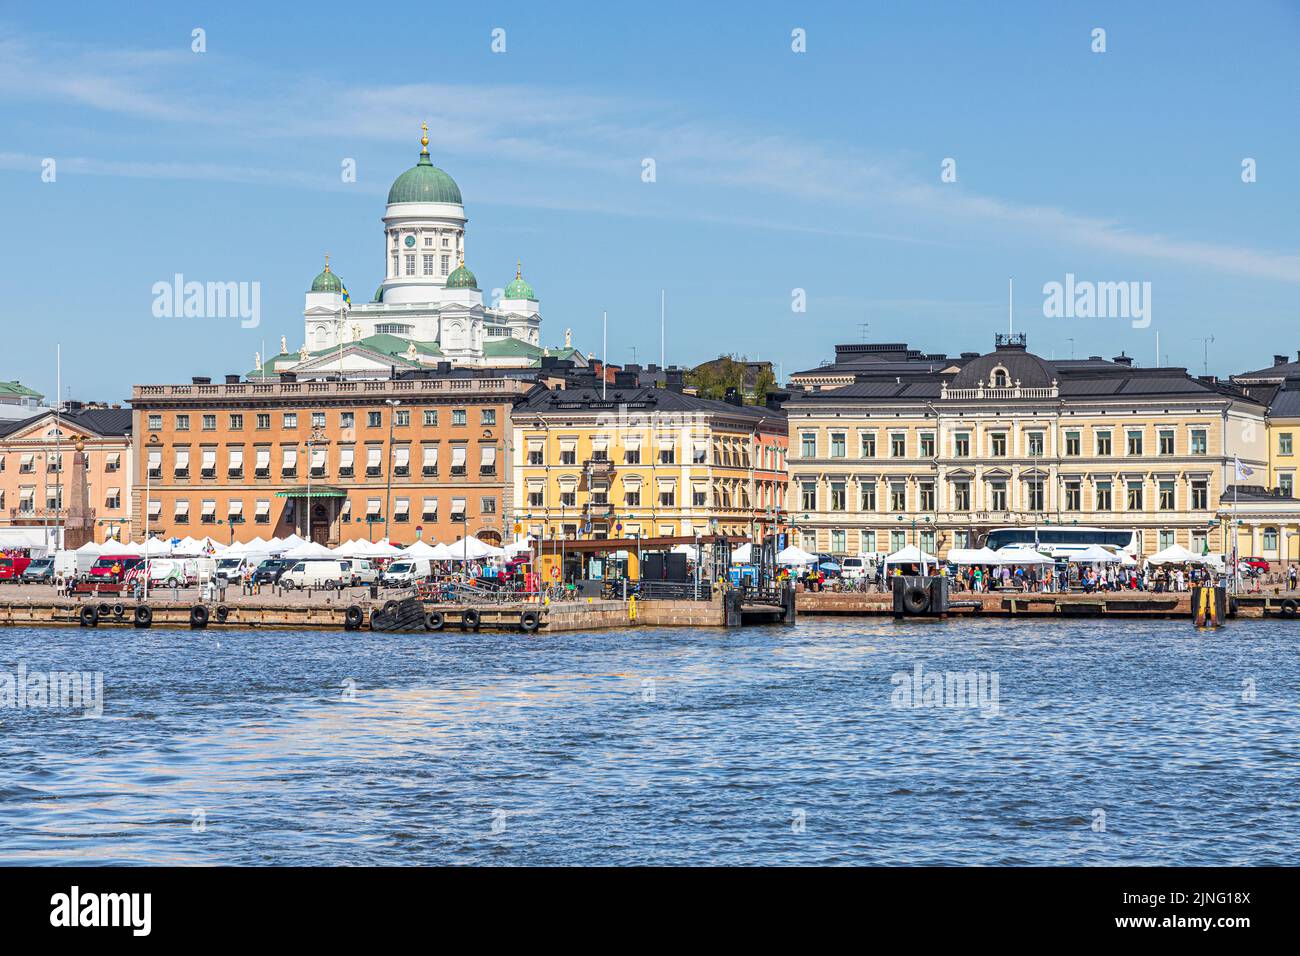 La plaza del mercado (Kauppatori) y el puerto están cubiertos por la catedral de Helsinki, Finlandia Foto de stock